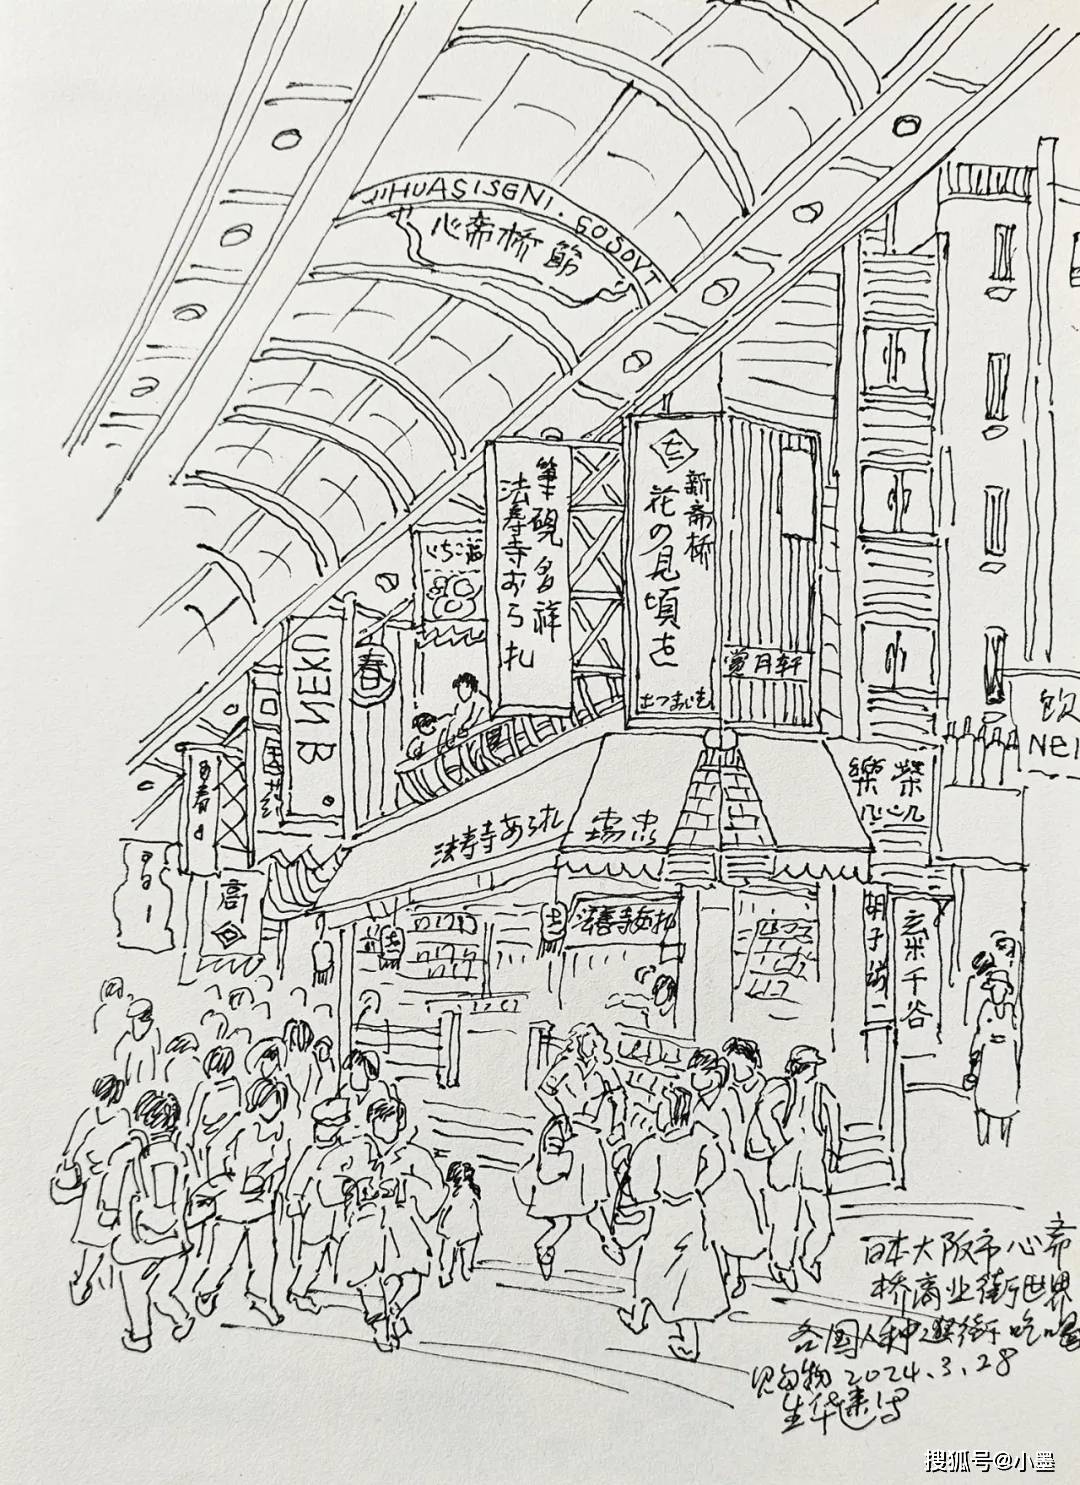 大阪心斋桥商业街,世界各国各色皮肤人来此观光,逛街购物